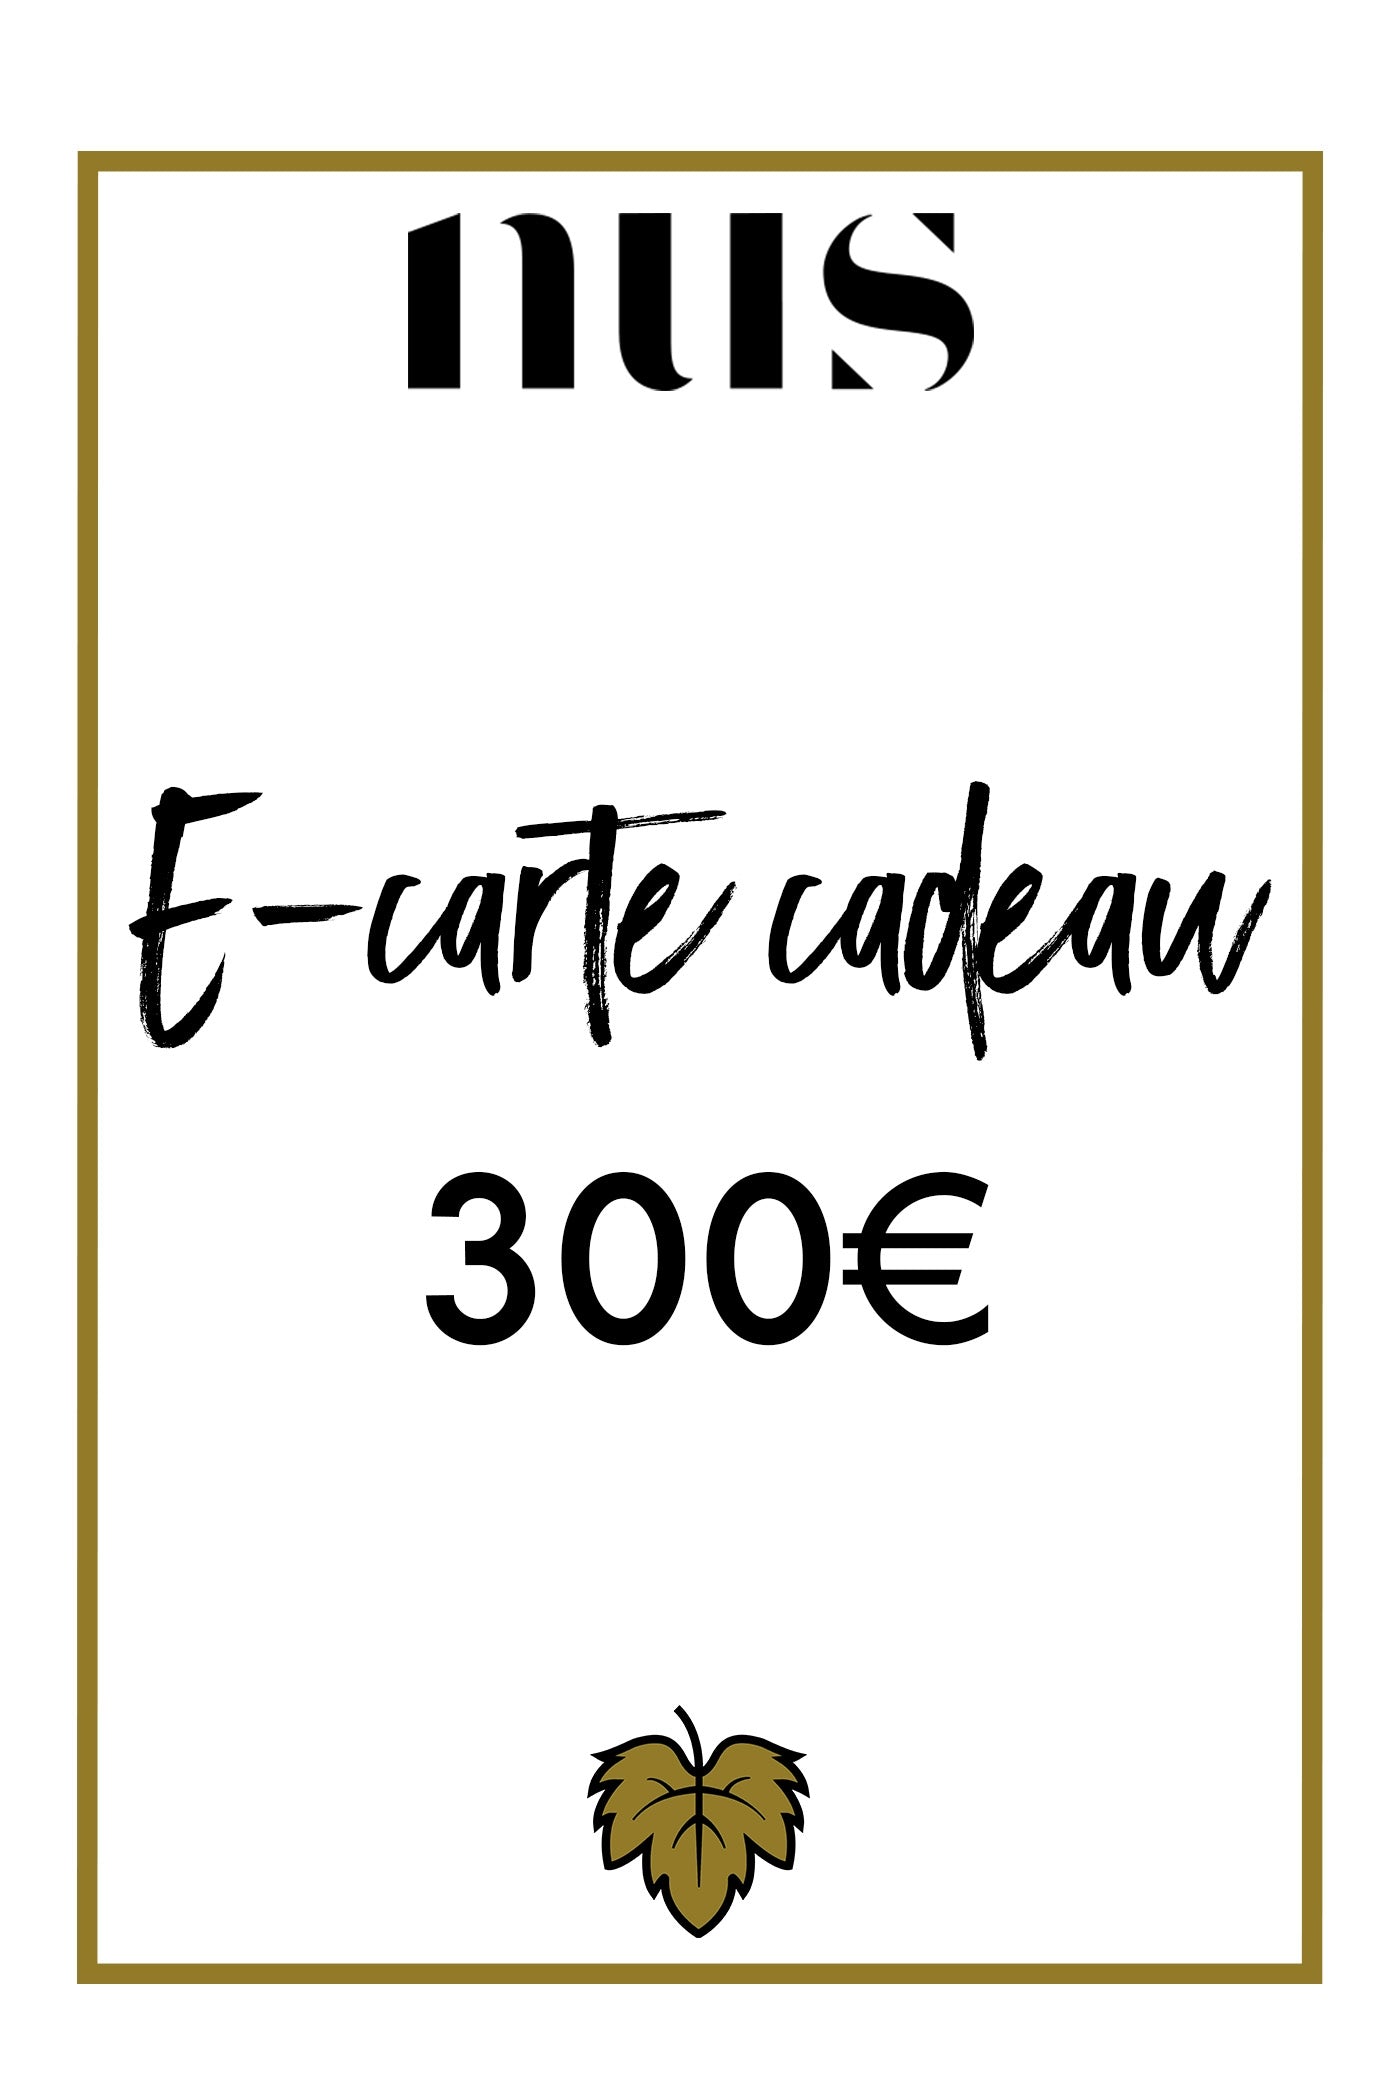 E-CARTE CADEAU 300€